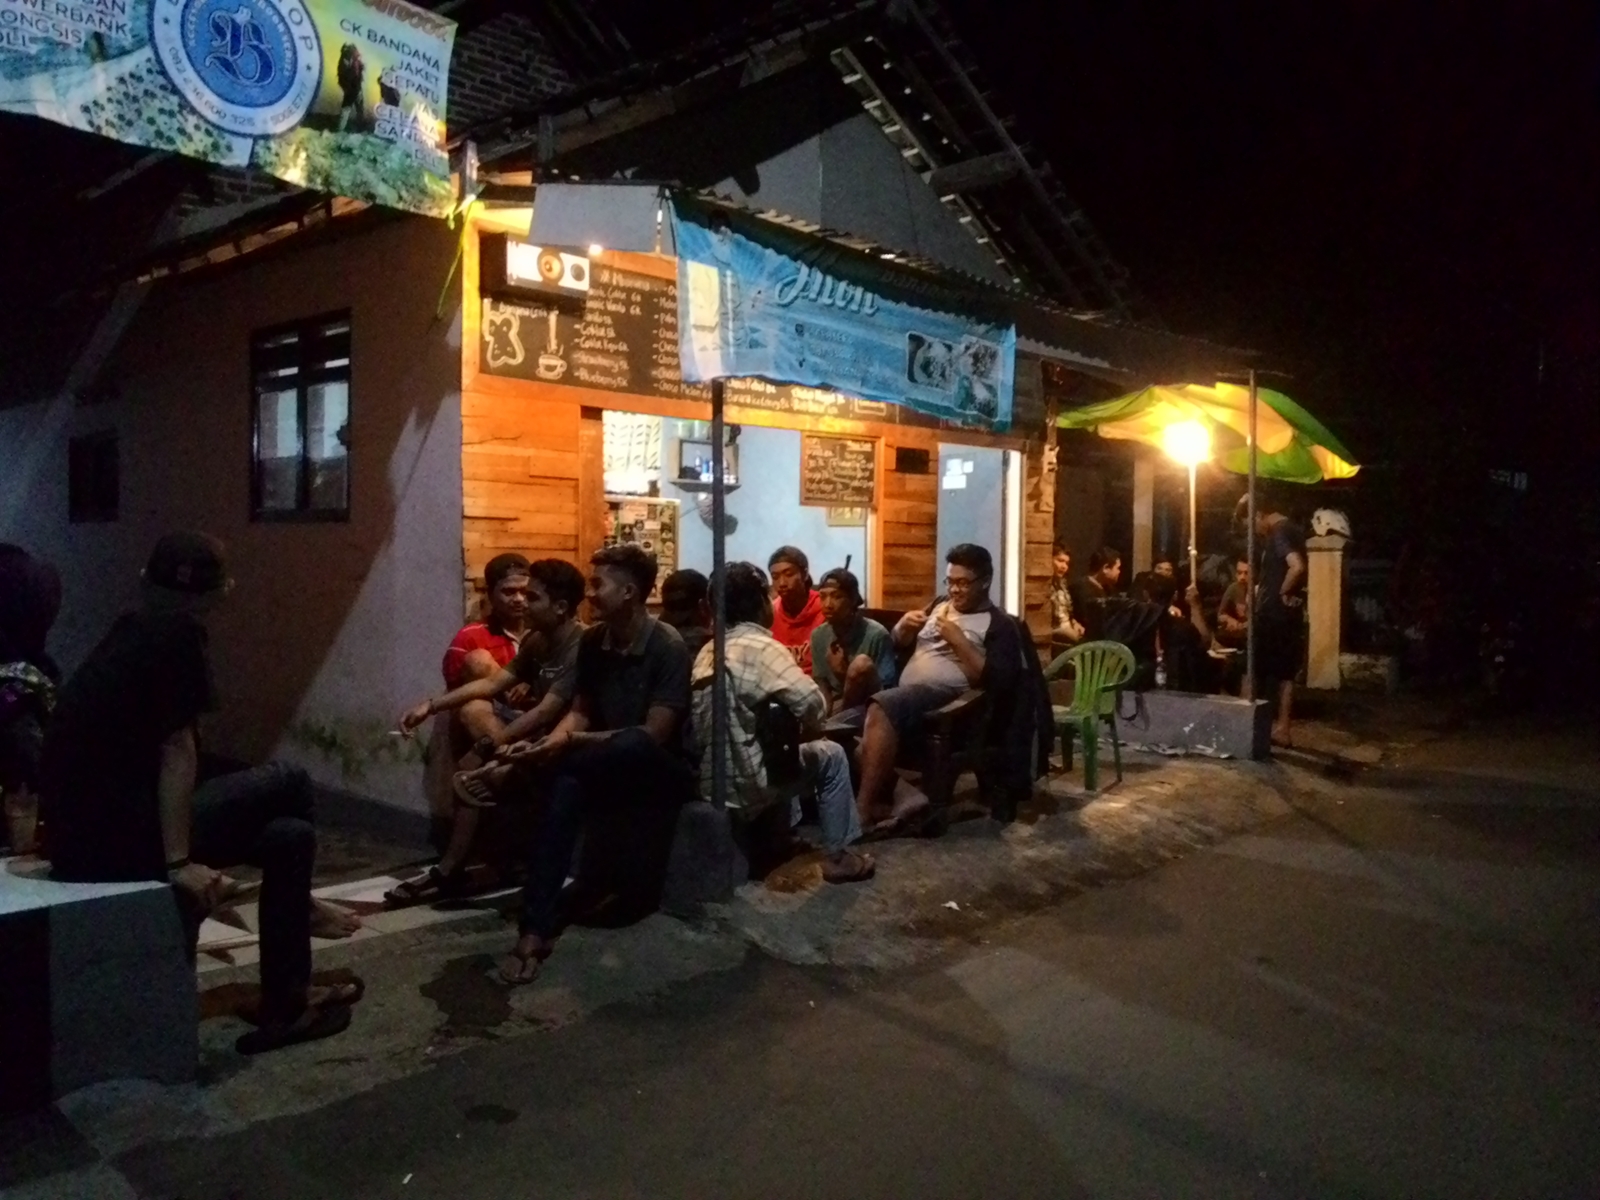 Kedai banana crispy Riza Permadi dipadai pembeli di malam hari (sumber gambar : Riza Permadi)